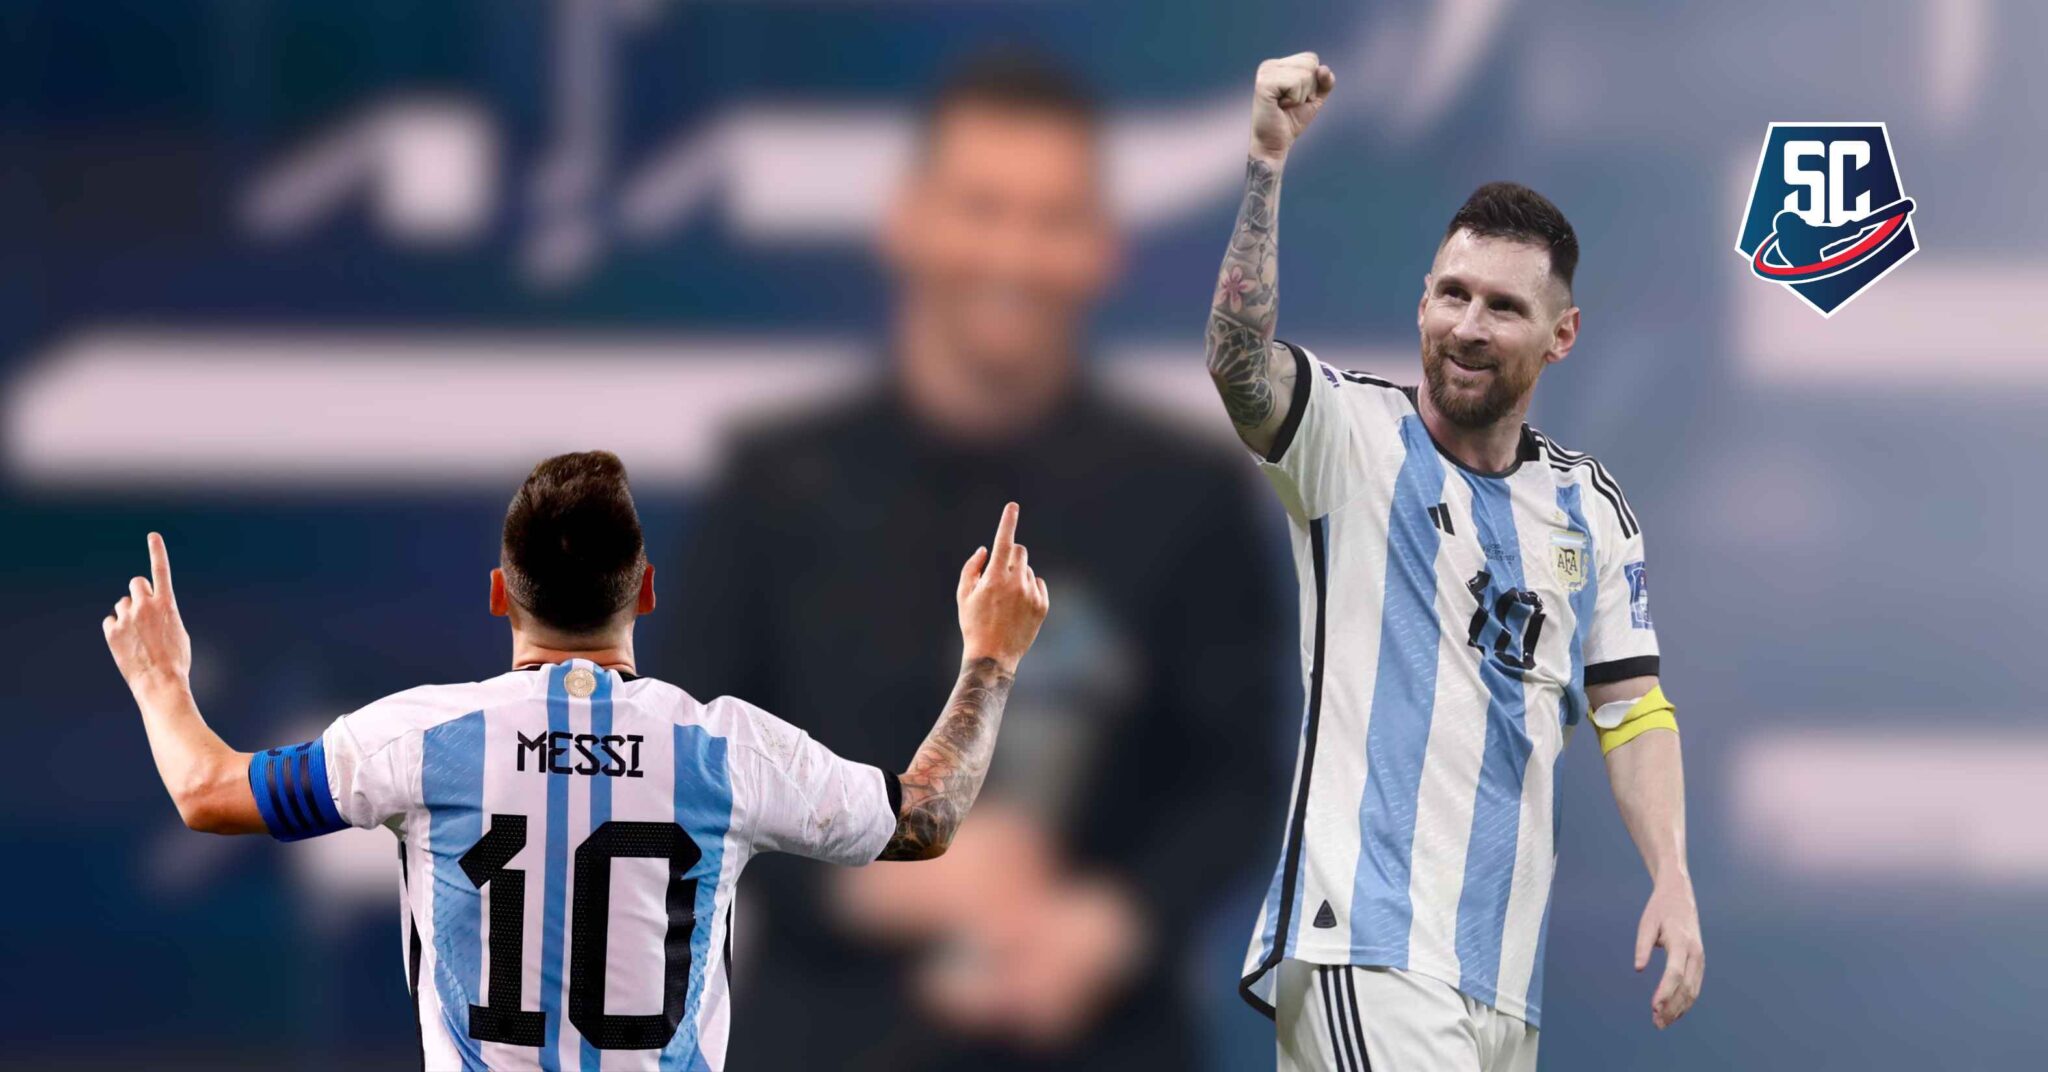 ¿Logrará Lionel Messi hacerse del galardón?